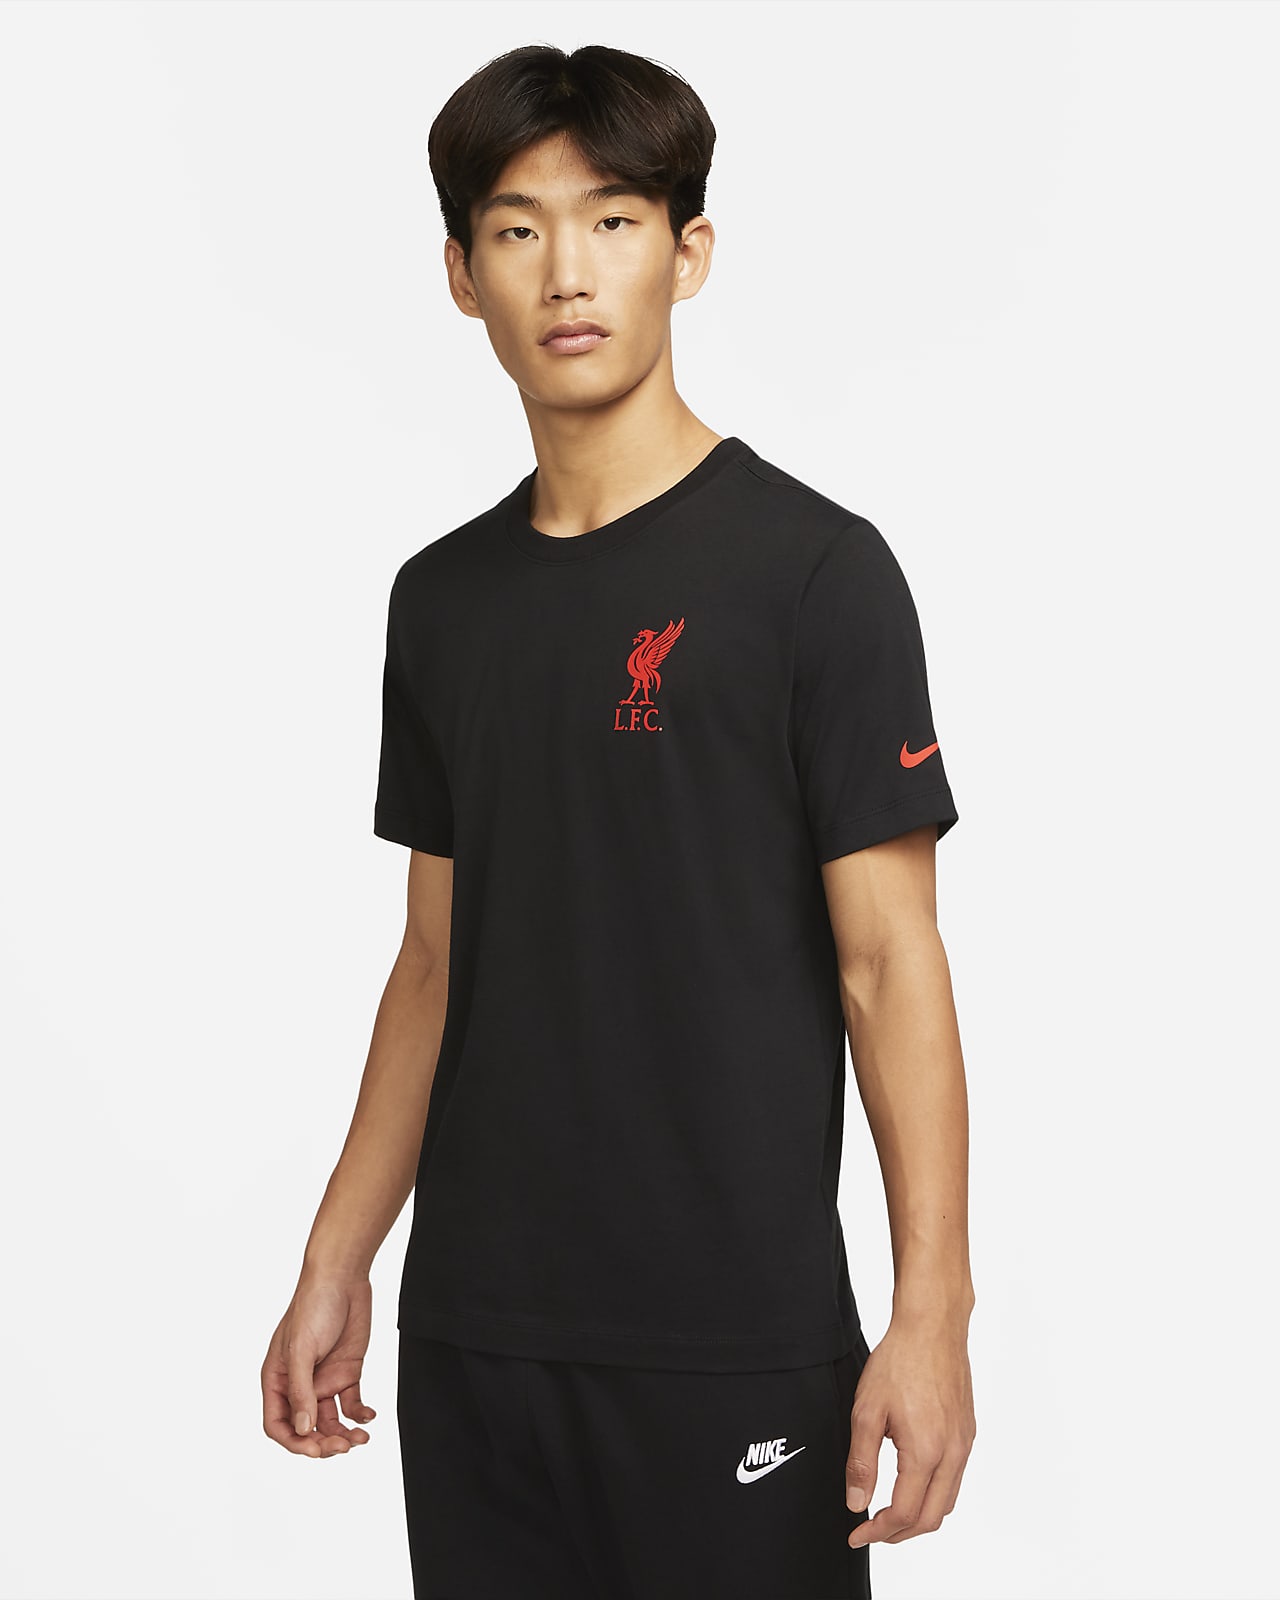 Liverpool F.C. Men's T-Shirt